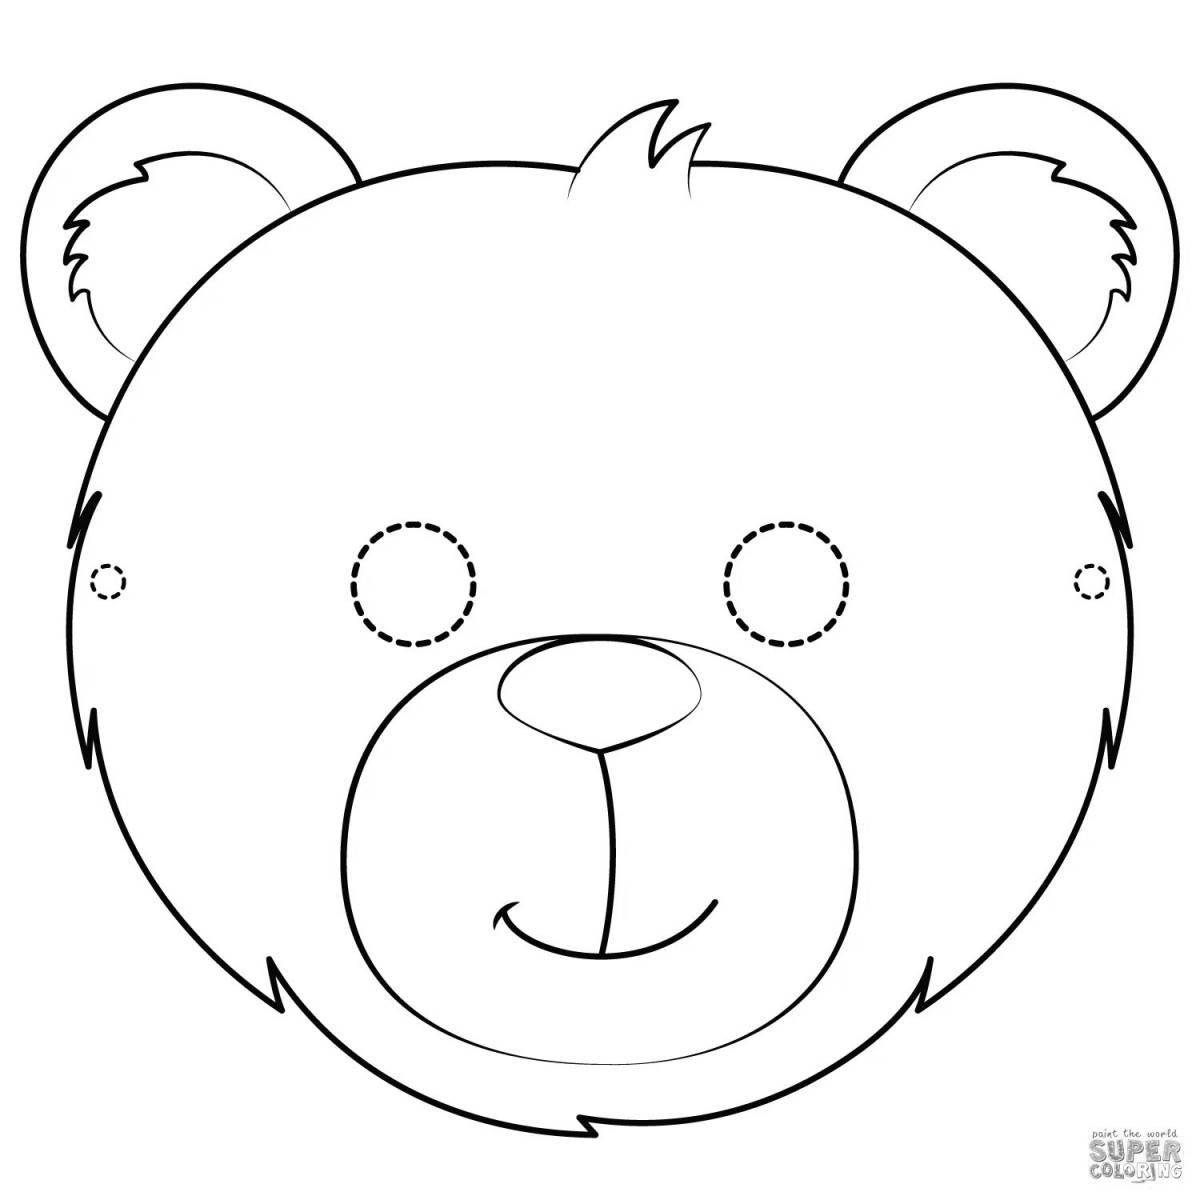 Coloring head of a joyful bear